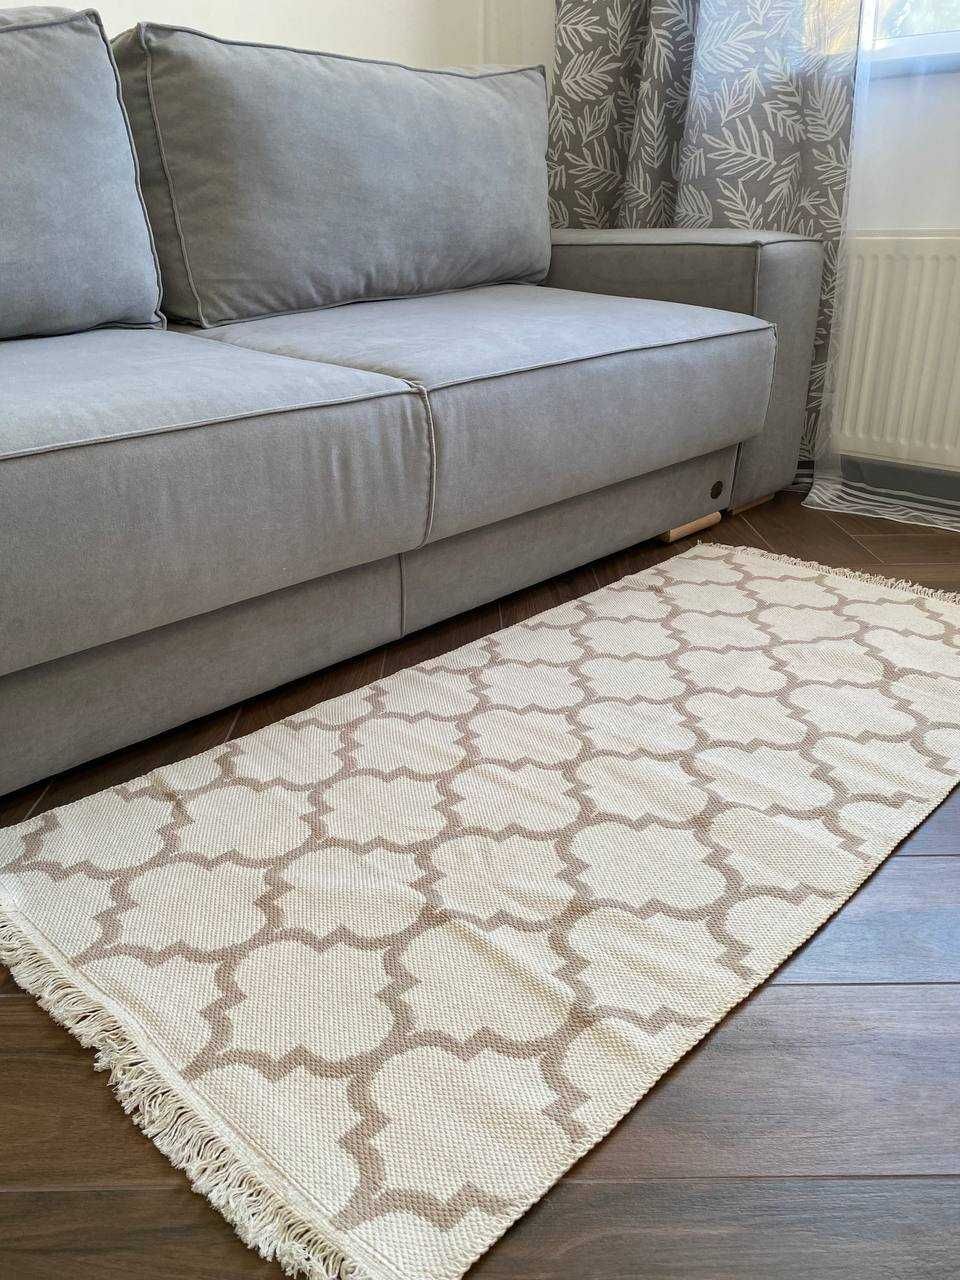 Коричнево-білий турецький килим, коврик, ковер